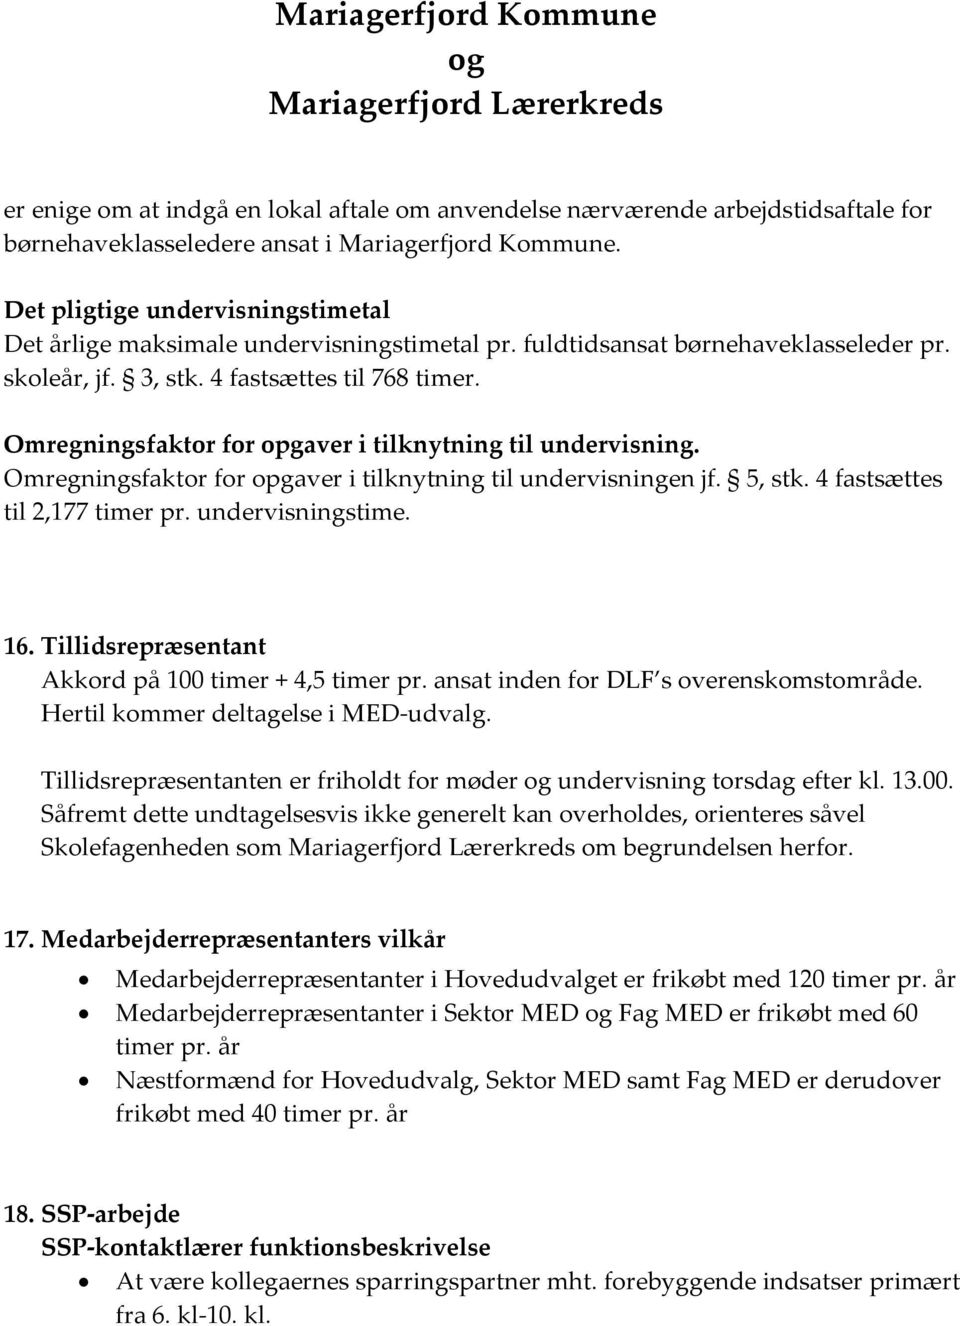 Mariagerfjord Kommune og Mariagerfjord Lærerkreds - PDF Gratis download